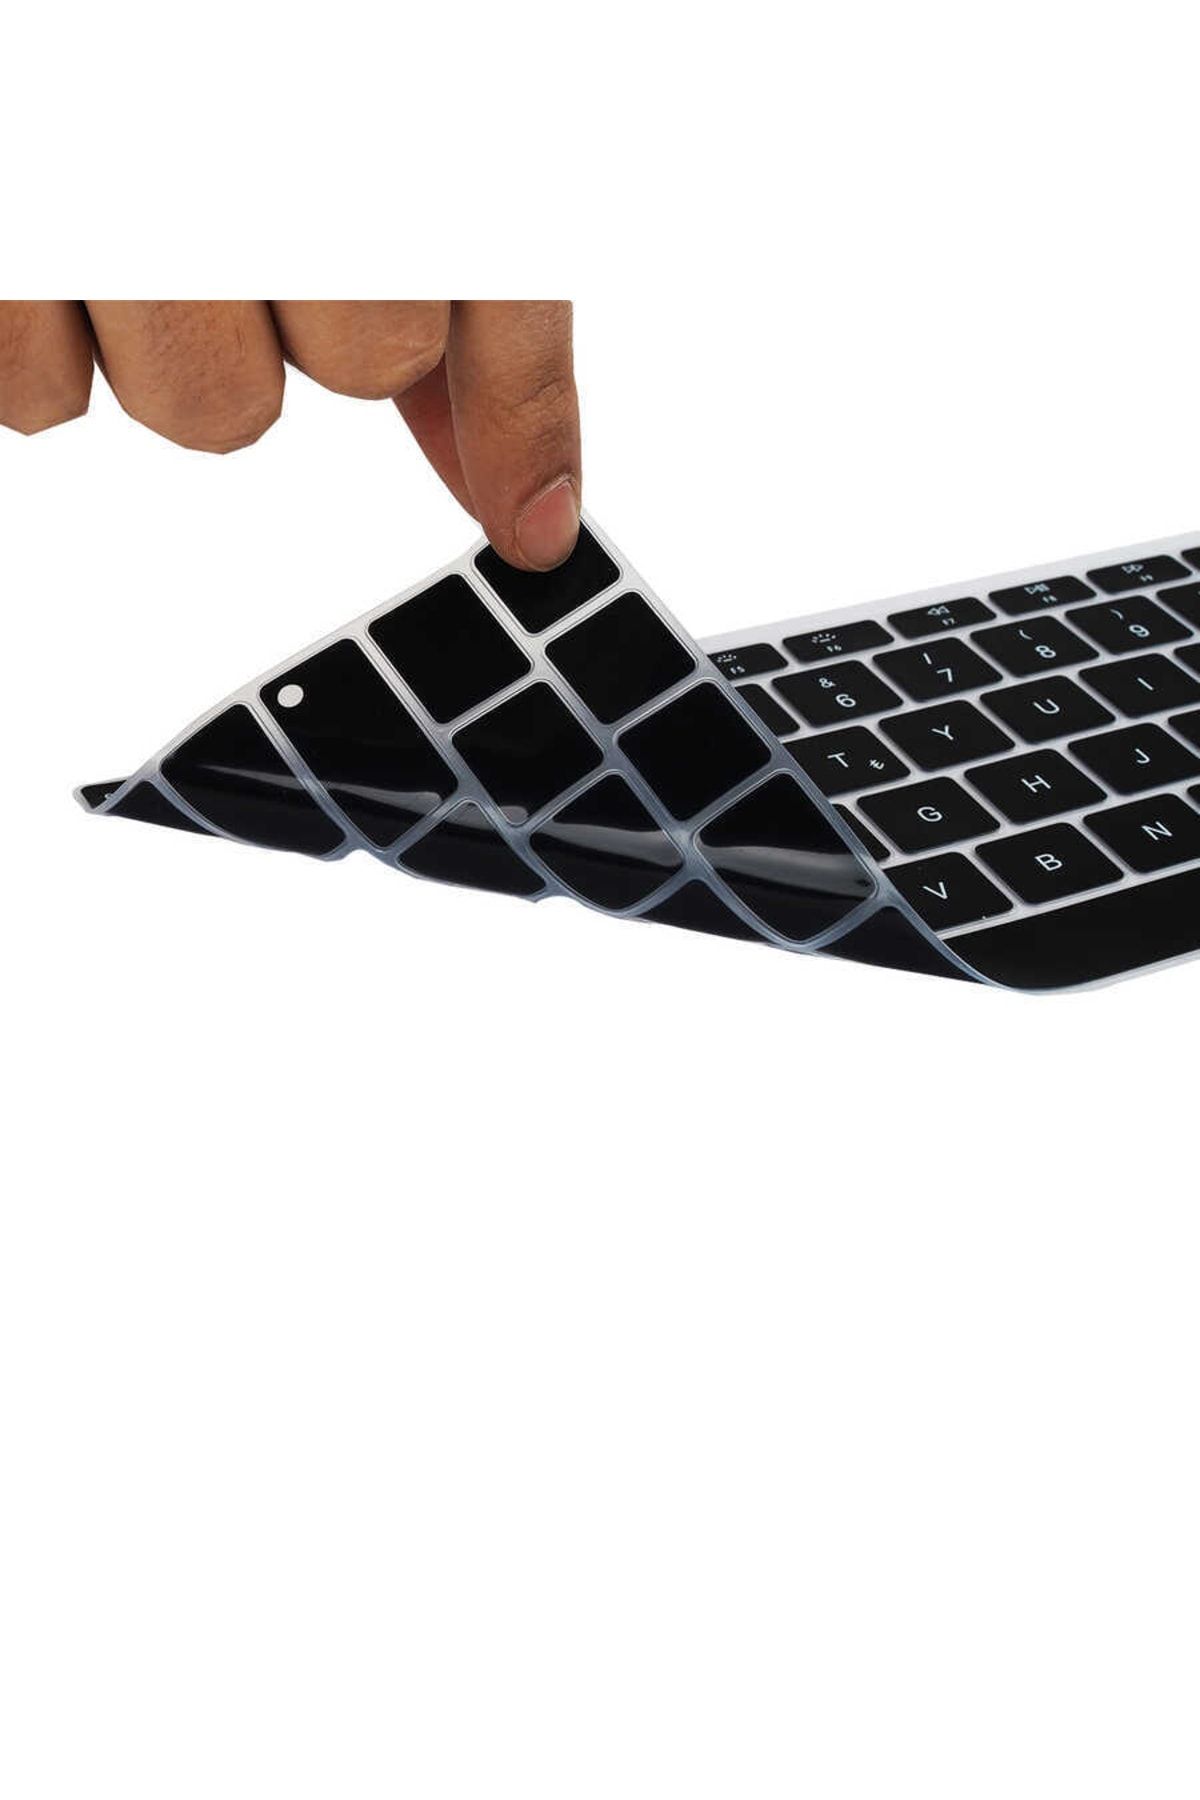 Nezih Case Macbook 13 Inç Pro Touch Bar A1706 Uyumlu Toza Sıvıya Dayanıklı Yıkanabilir Klavye Koruyucu